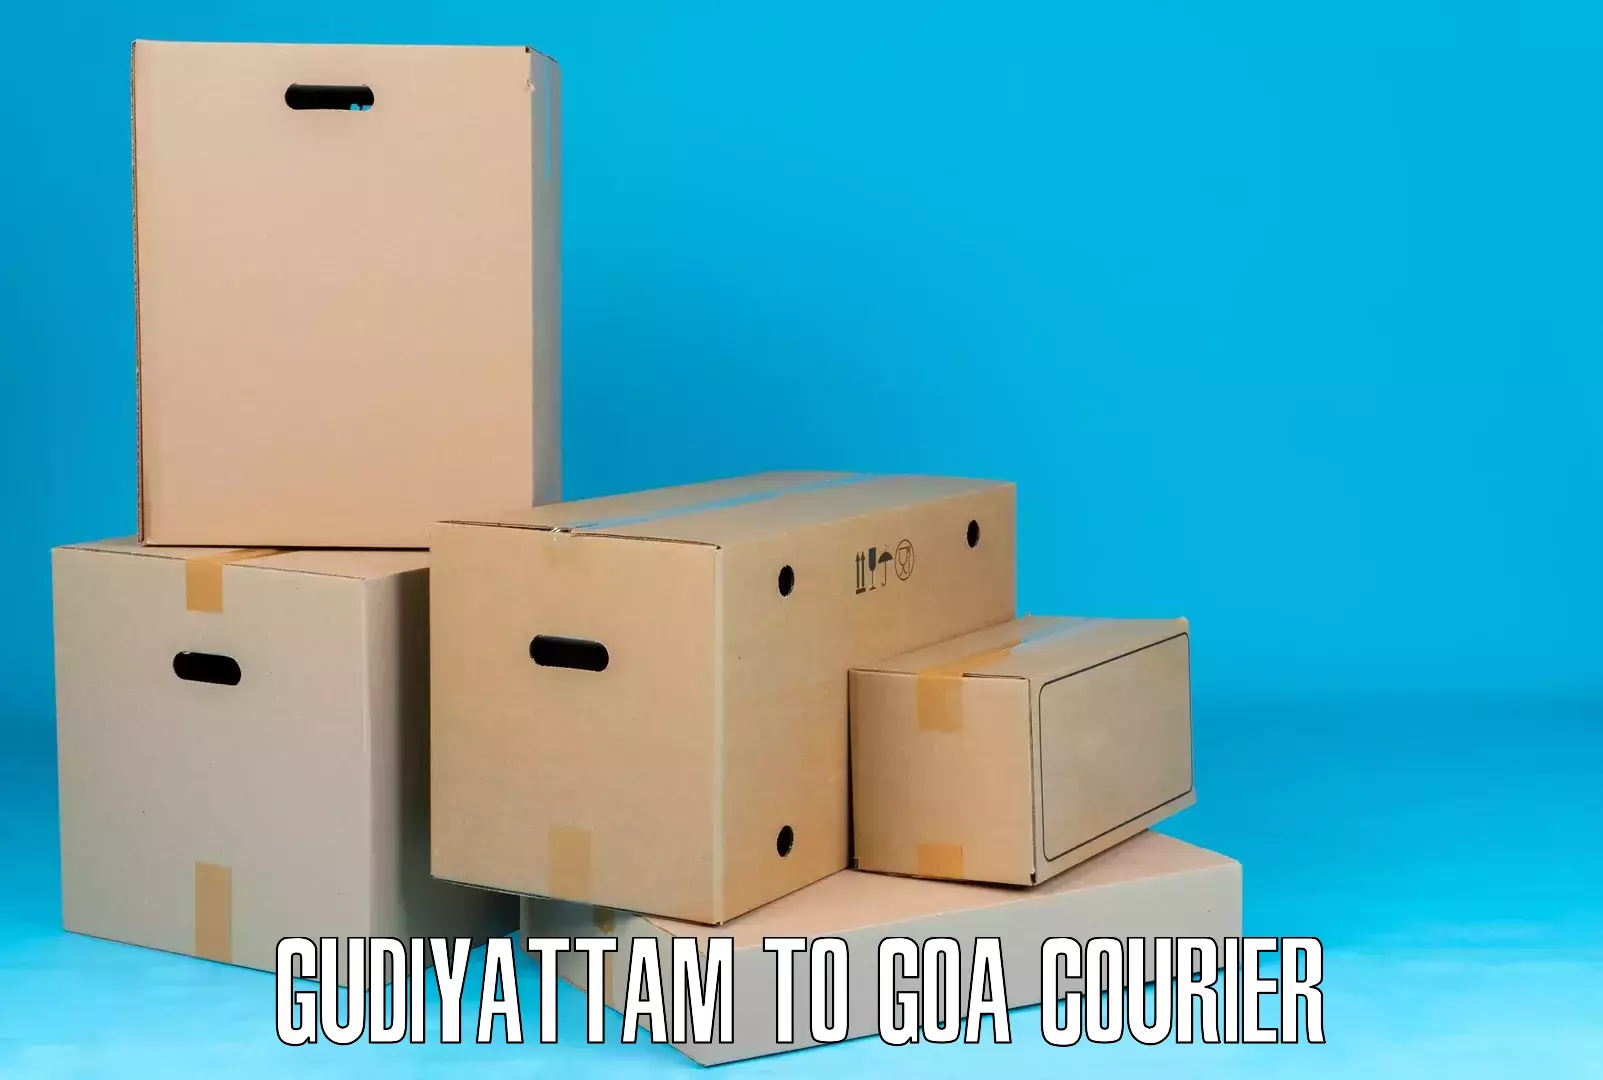 Multi-modal transportation Gudiyattam to IIT Goa